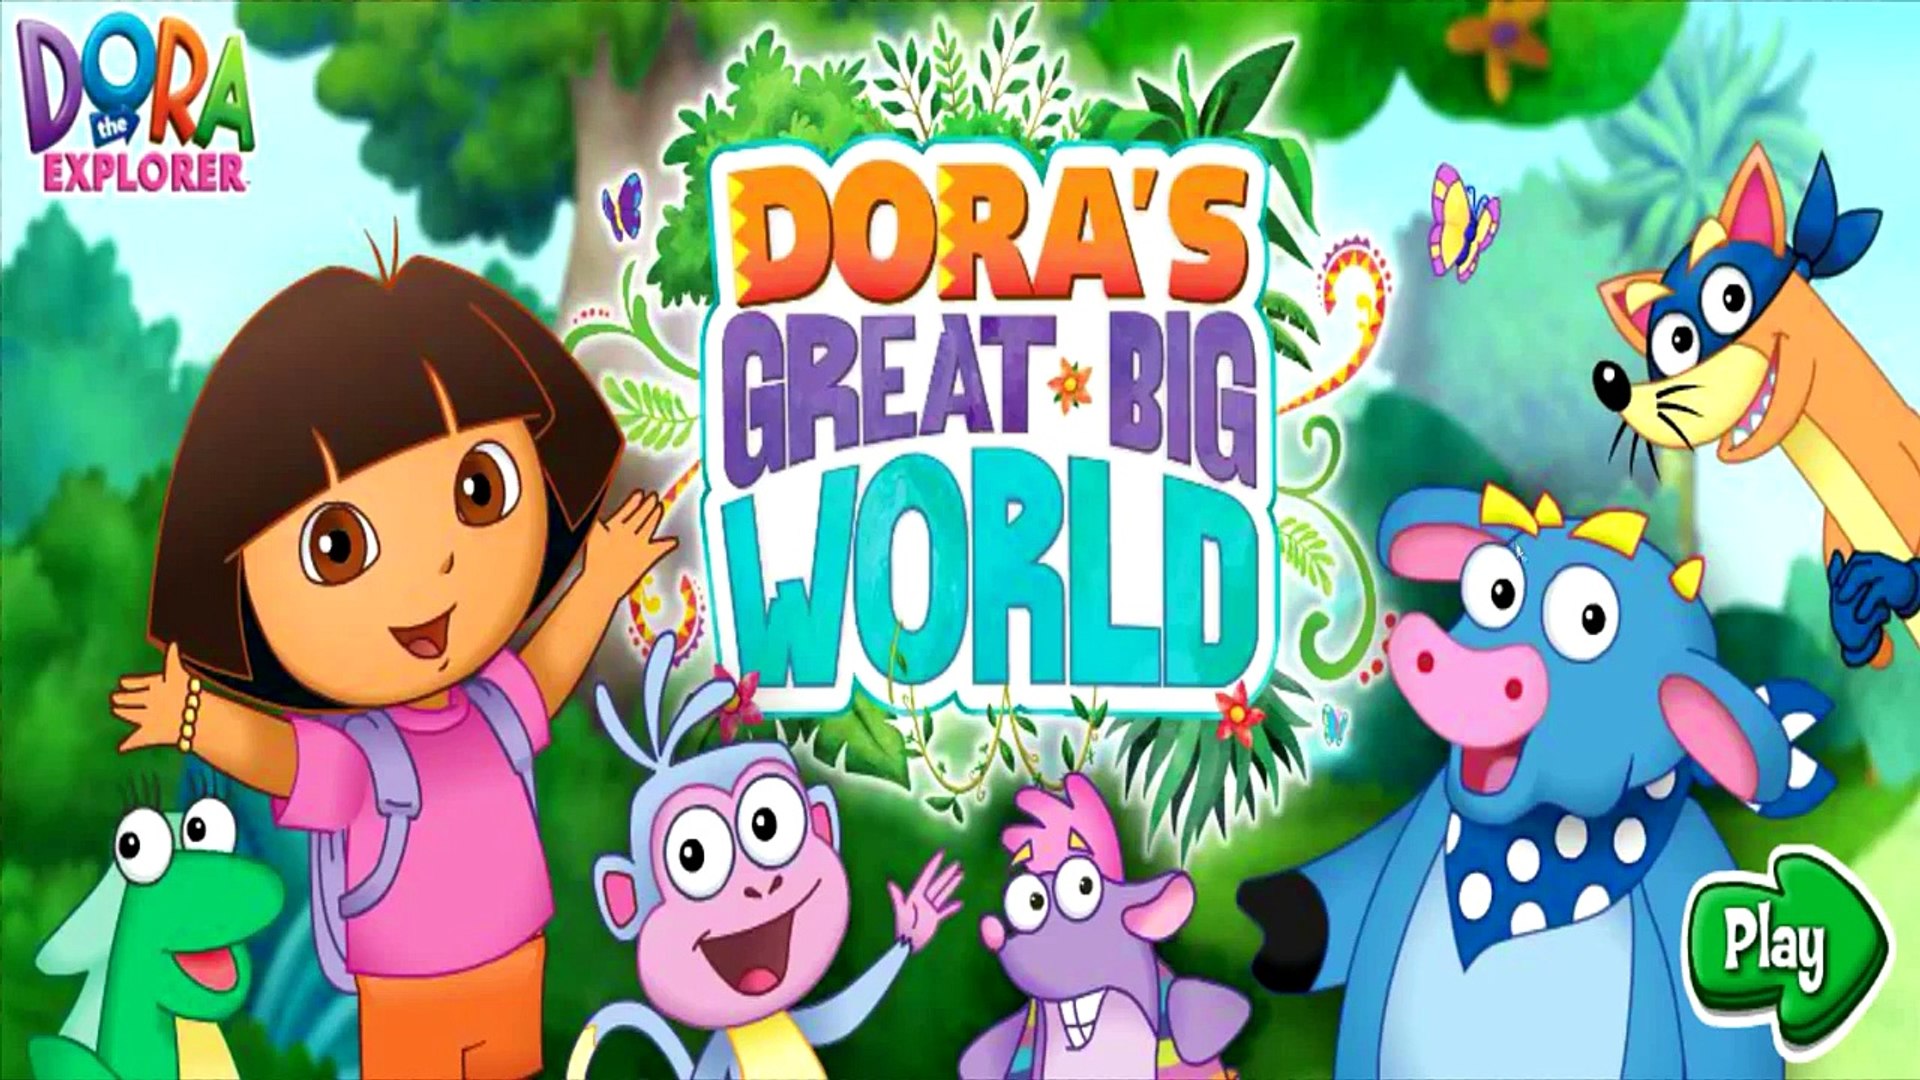 Дора исследователь Дора большой большой мир Часть 2 МСА сад игры для детей